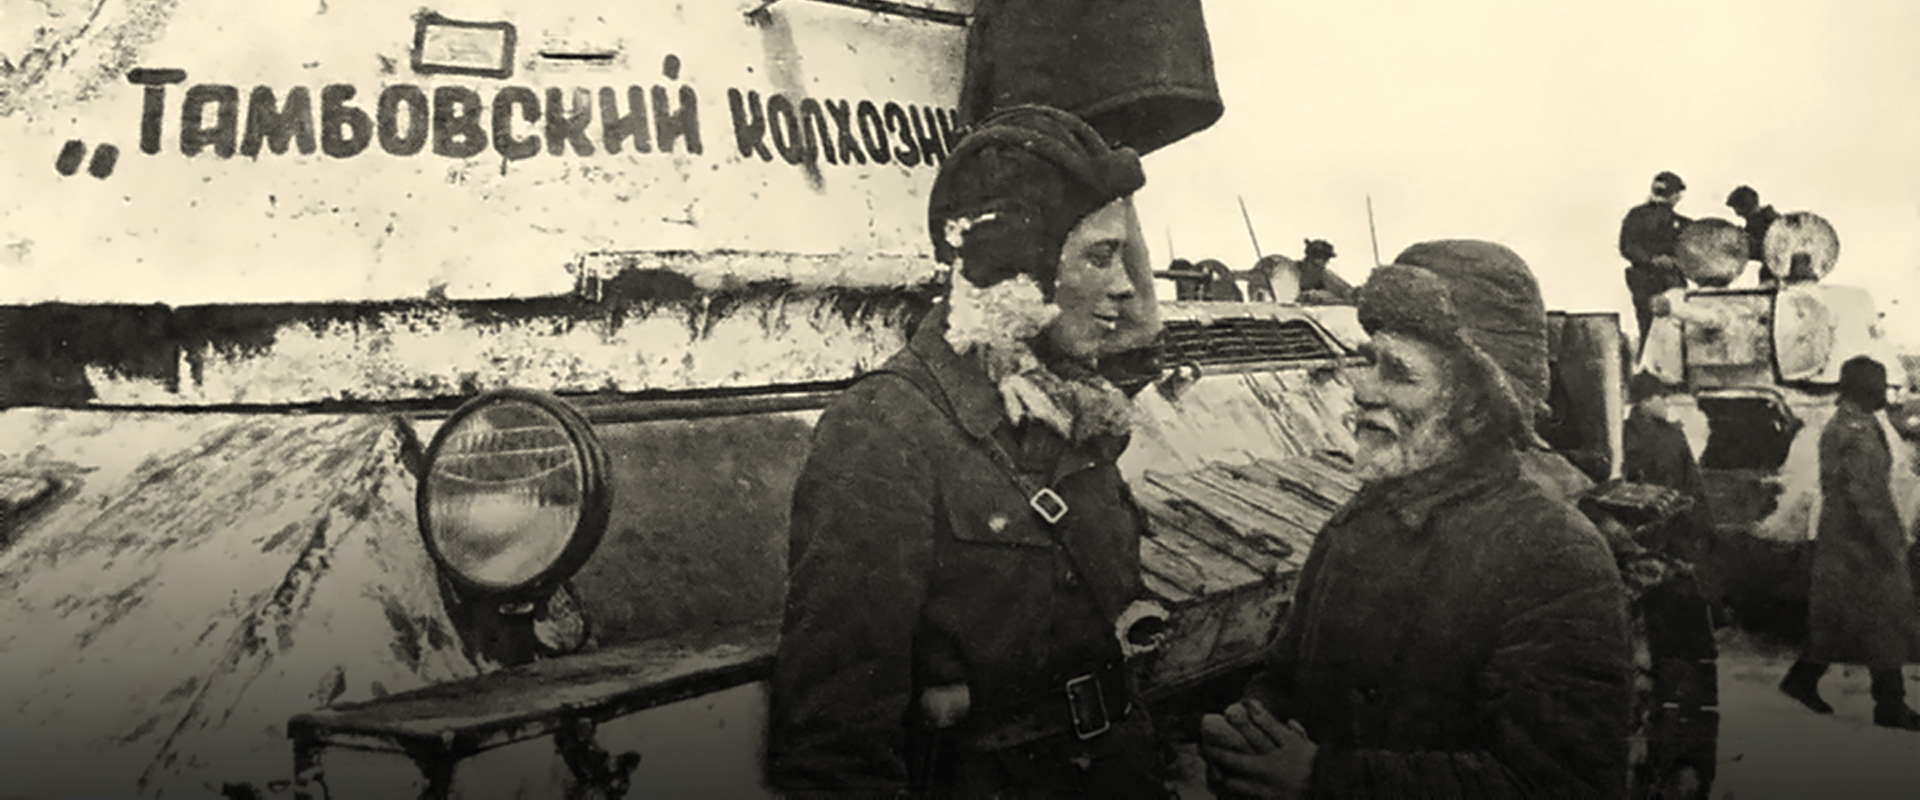 Передача Красной Армии танков от тамбовских крестьян